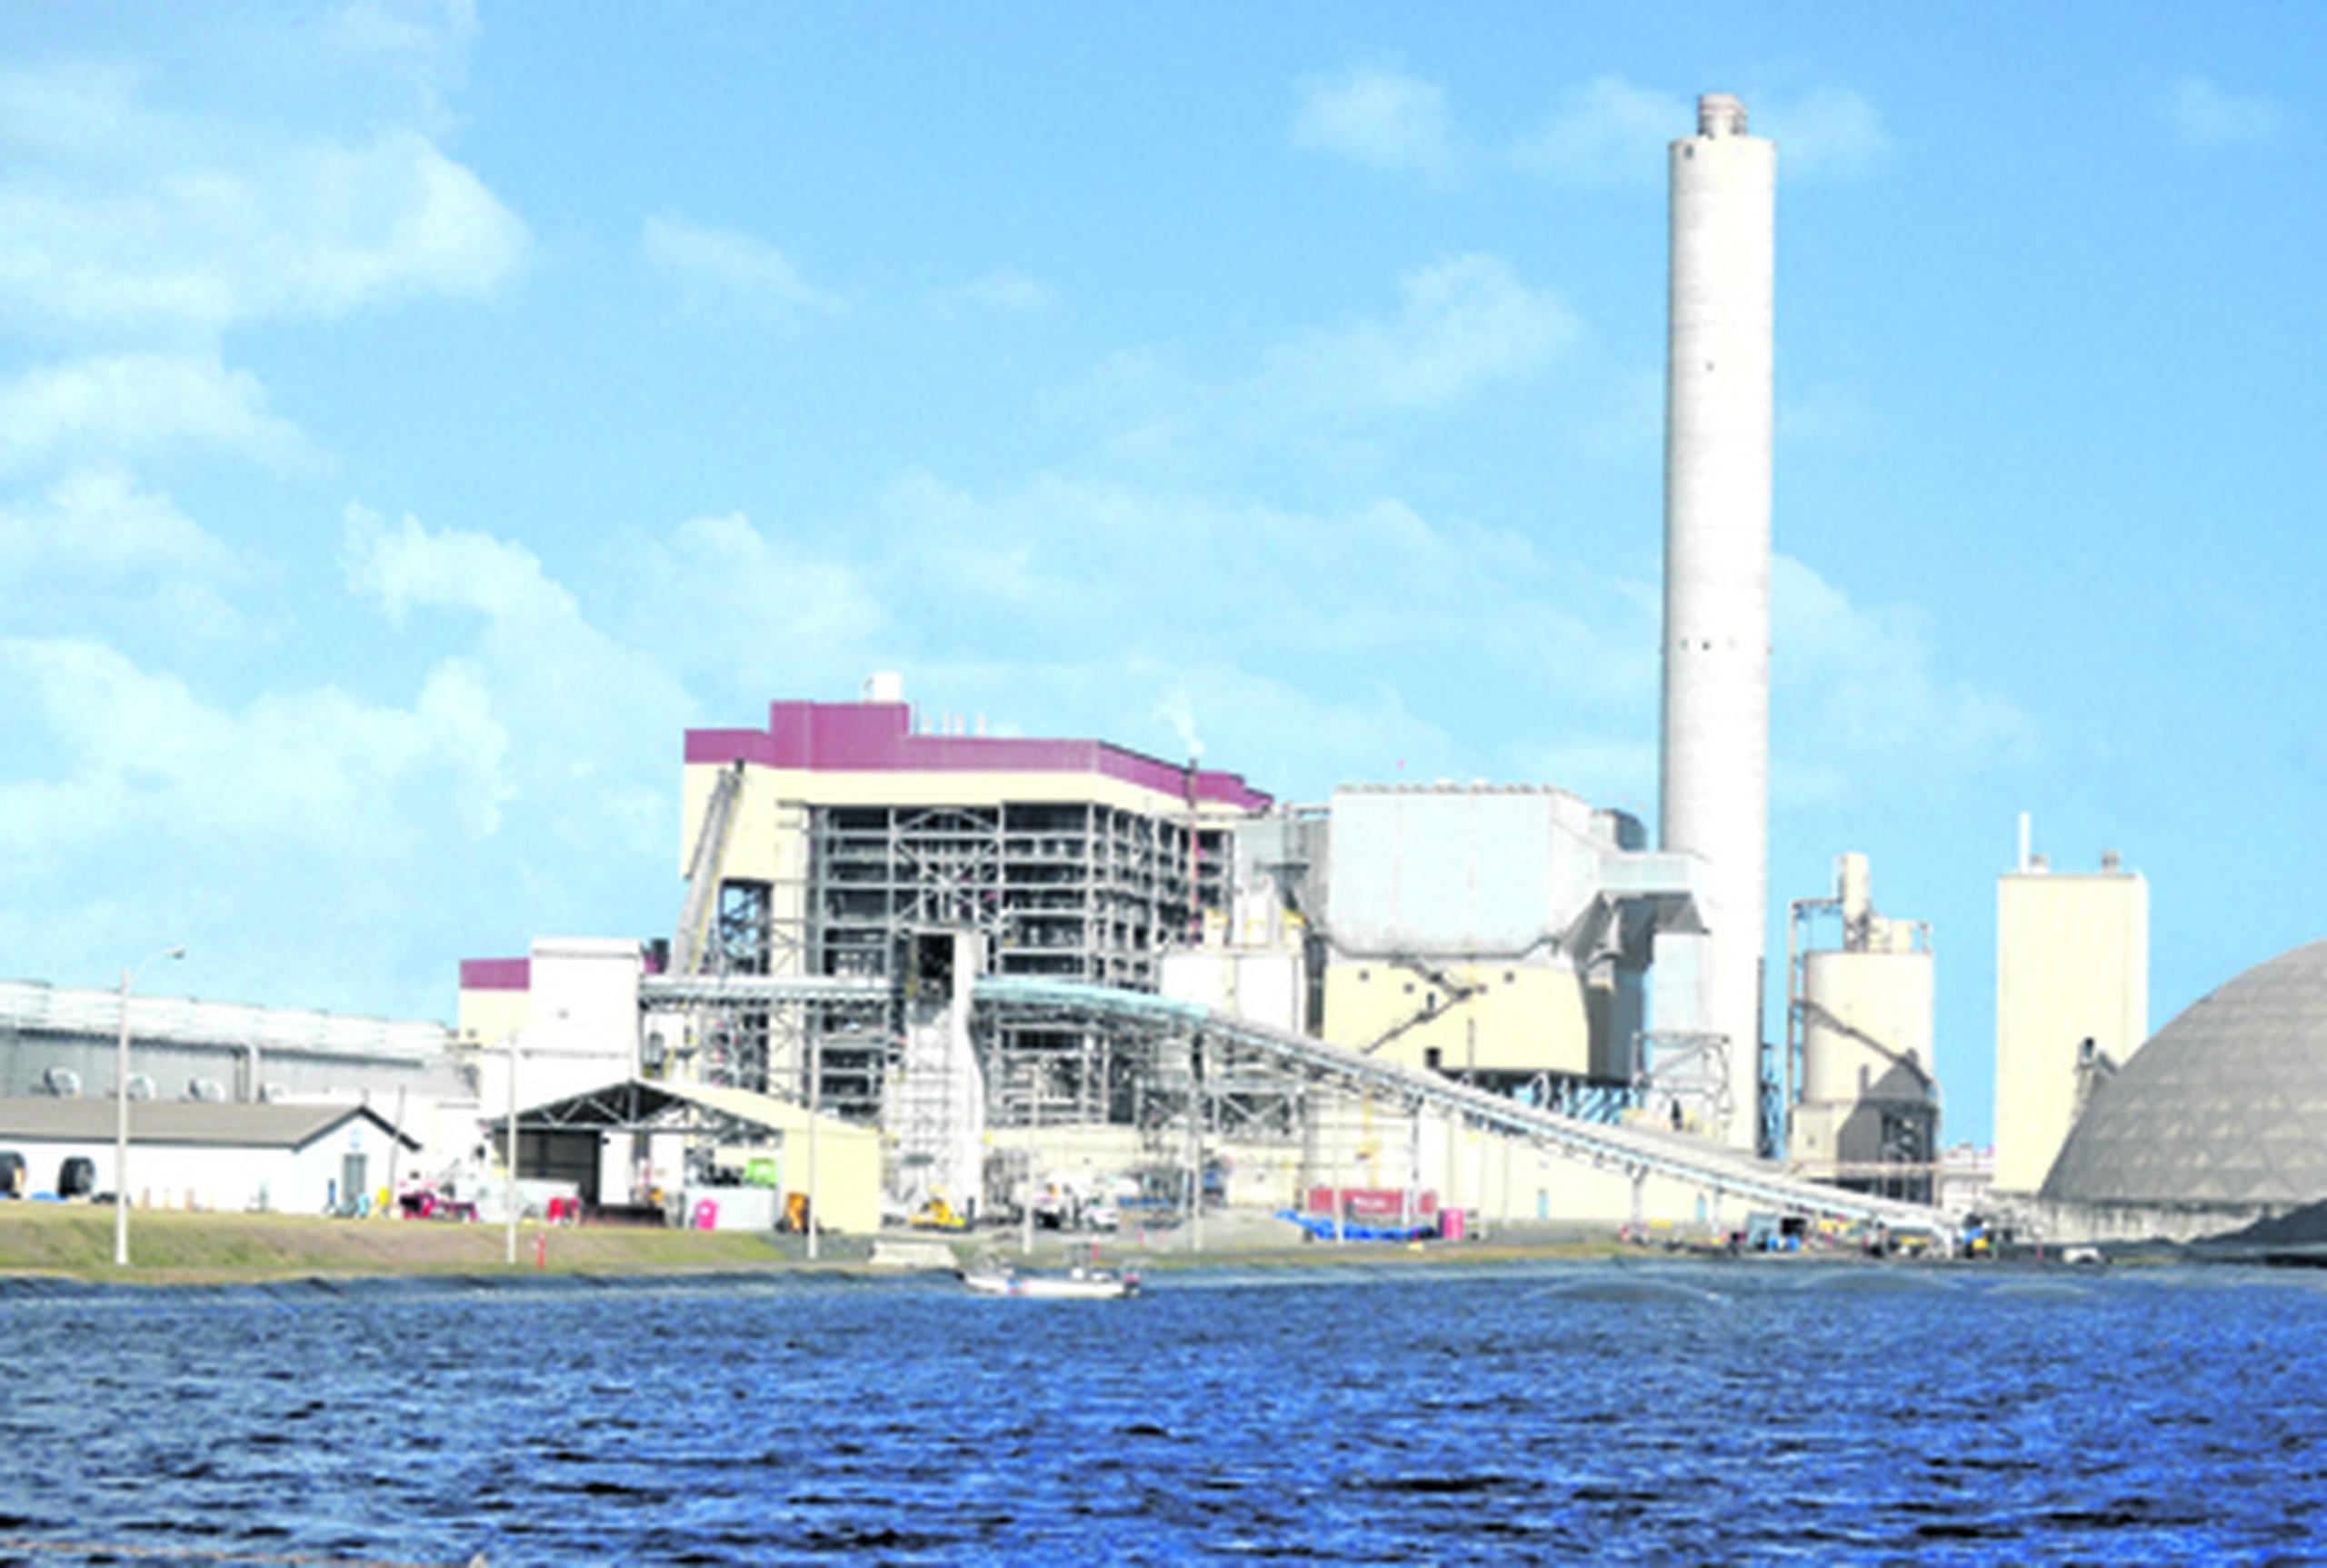 La planta generadora de energía Applied Energy Systems (AES) se estableció en el sector Puente de Jobos, en Guayama, en el 2002. (edgar.vazque@gfrmedia.com)